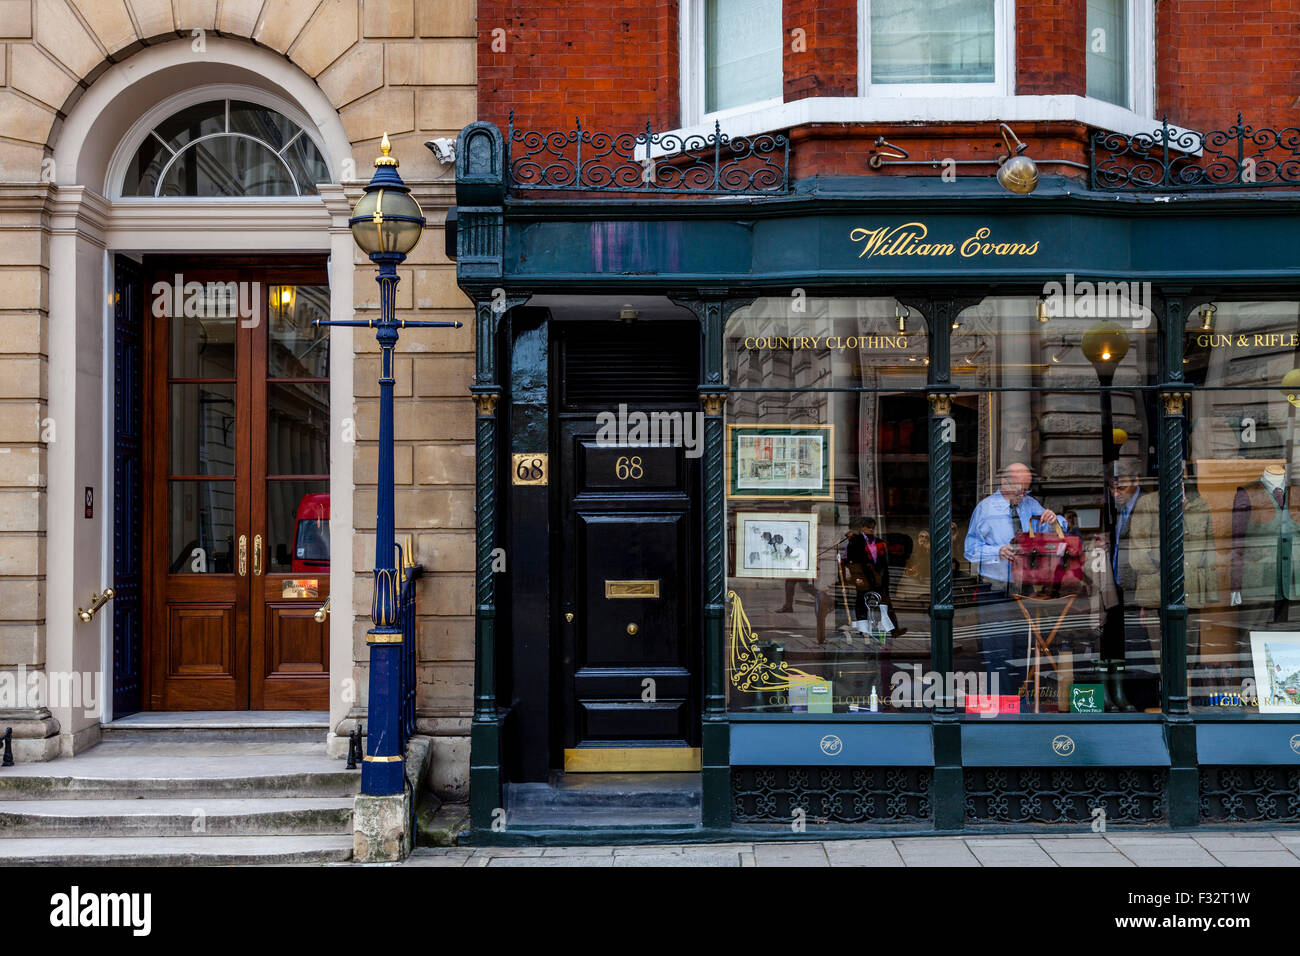 William Evans Paese negozio di abbigliamento, St James Street, Londra, Regno Unito Foto Stock